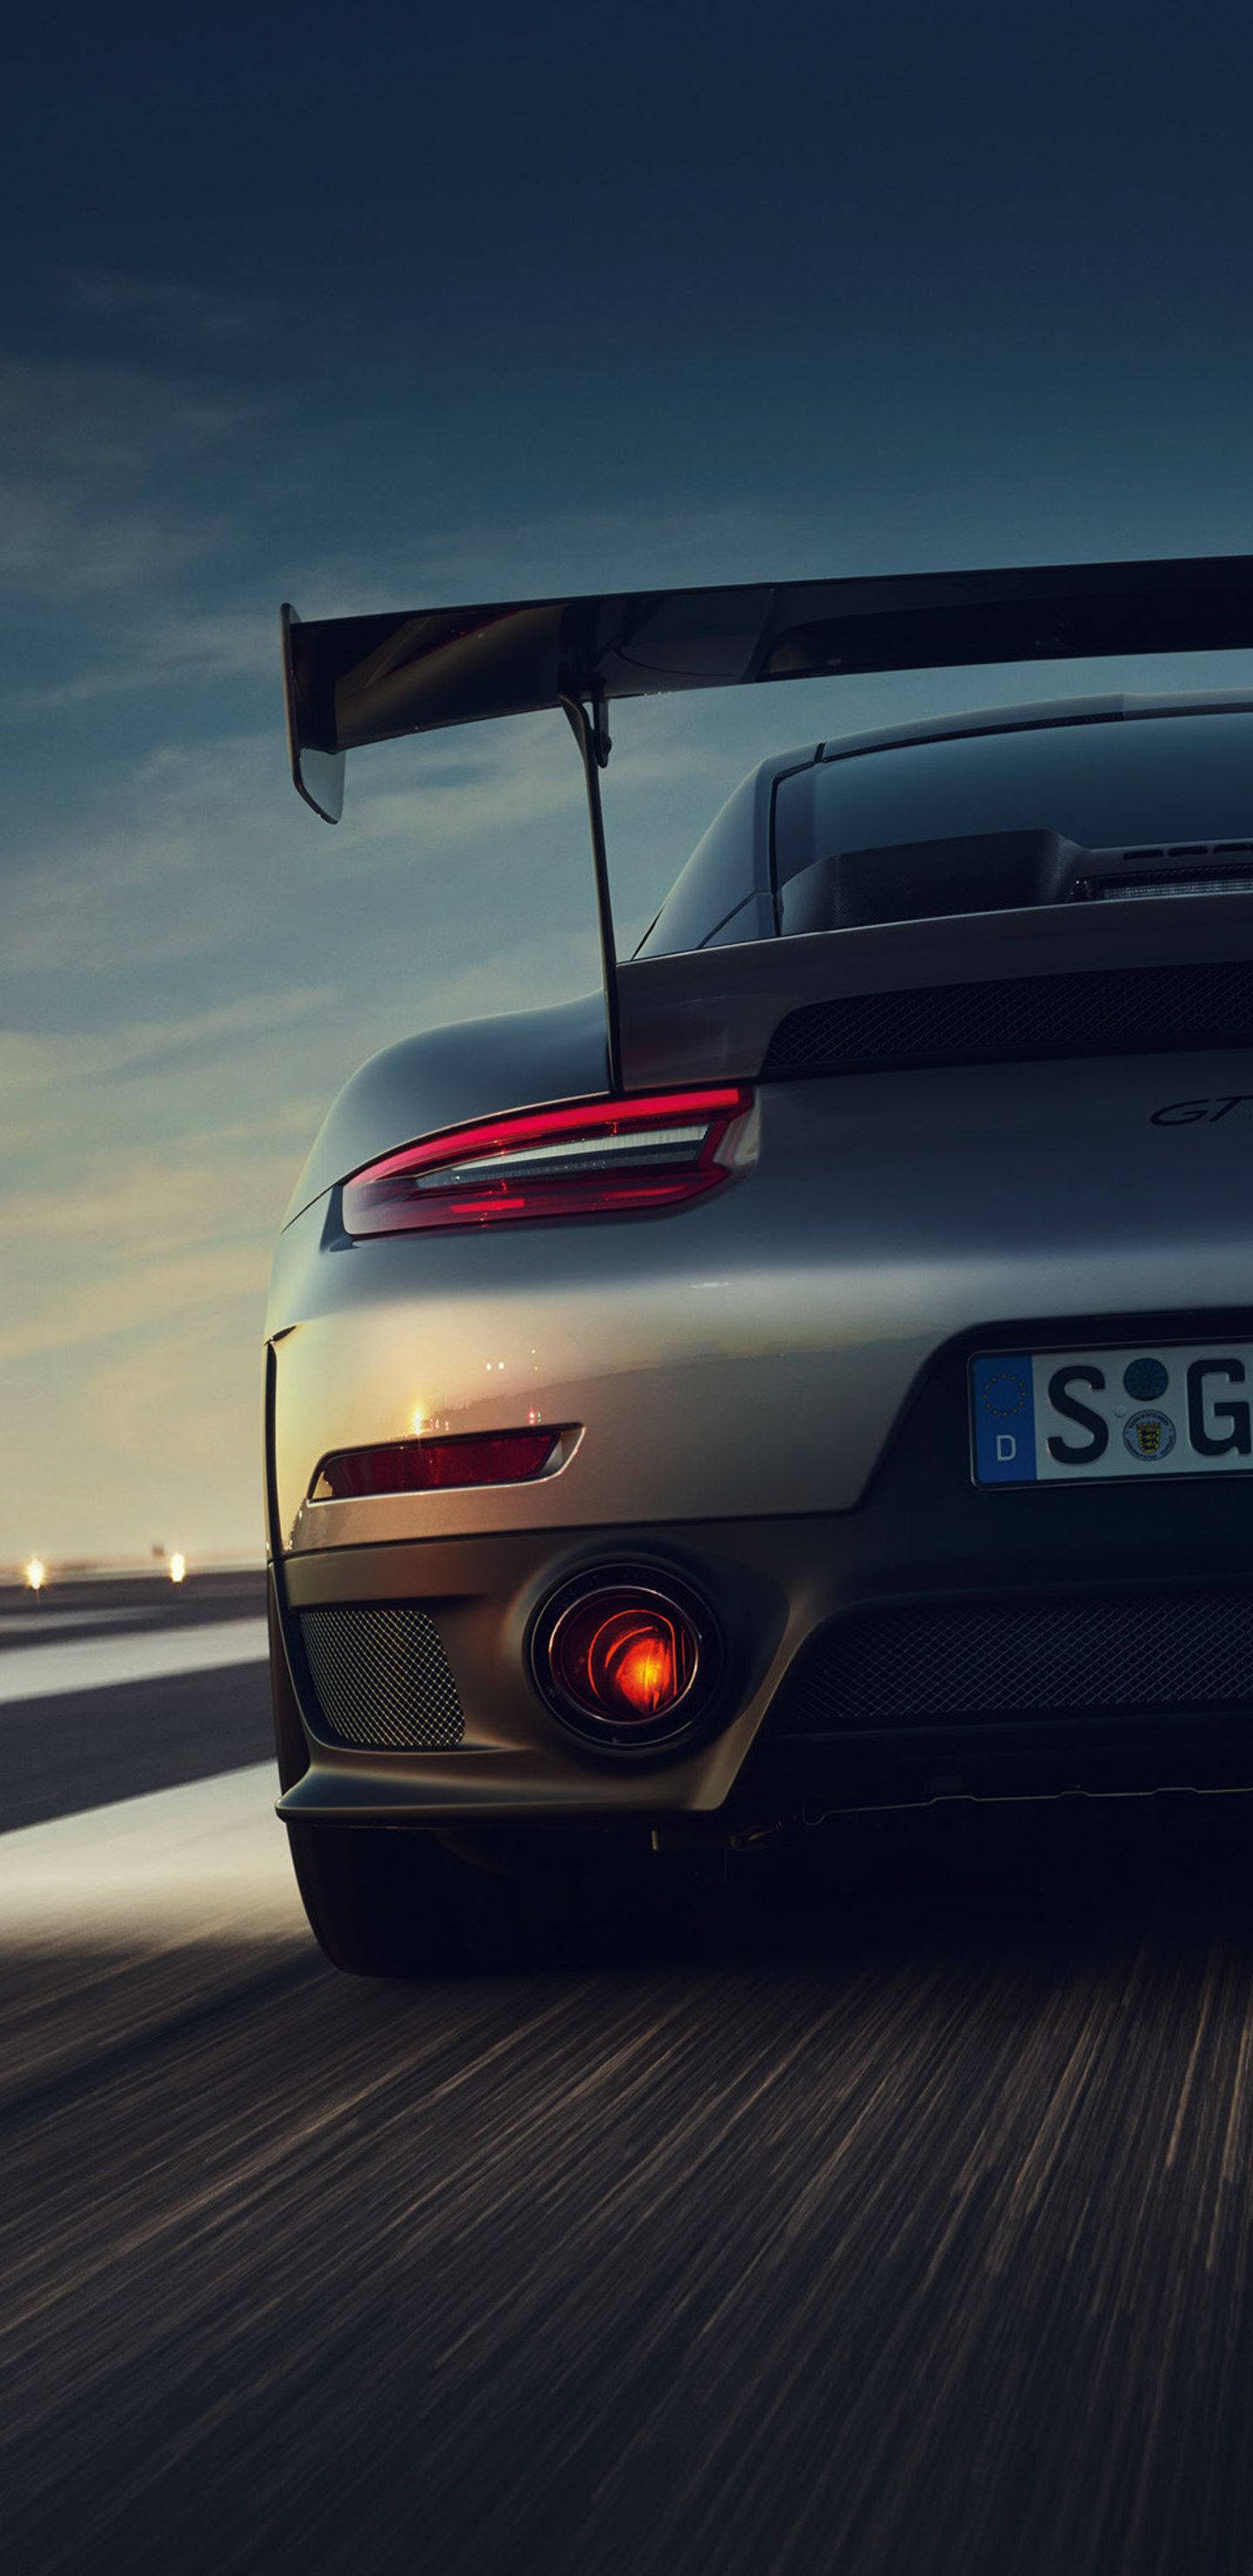 Ấn tượng với chiếc xe Gray Porsche 911 GT2 đang chờ bạn trải nghiệm trên màn hình iPhone của mình. Tải hình nền ngay để cùng hít thở cùng khí động học tuyệt vời của siêu xe này và giữ cho màn hình của bạn luôn phong cách và độc đáo.